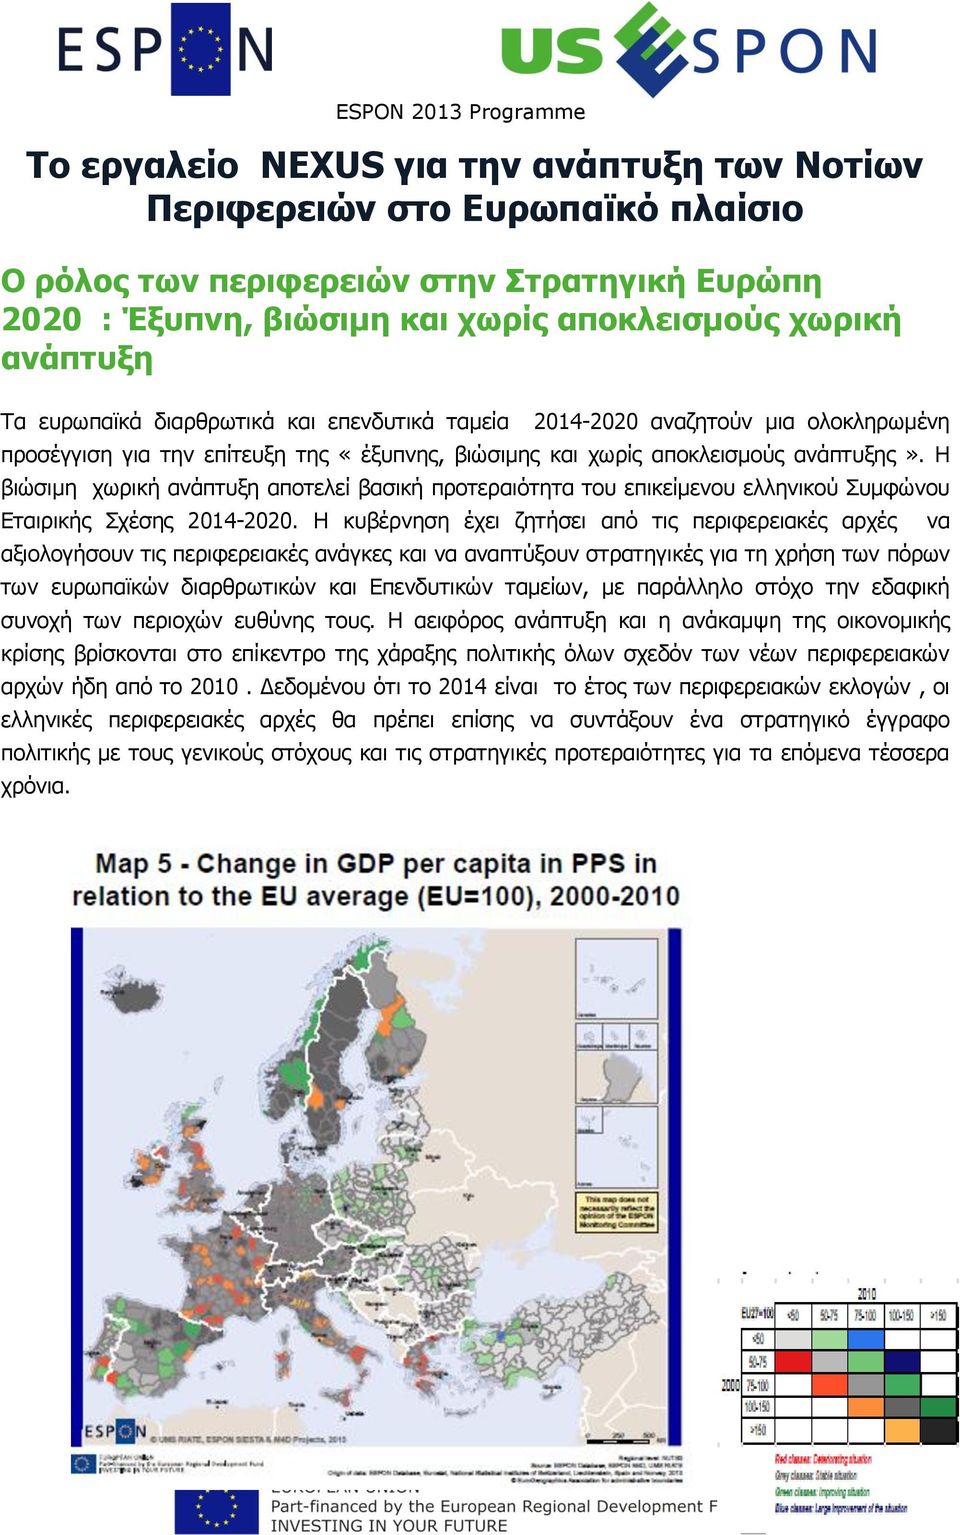 Η βιώσιμη χωρική ανάπτυξη αποτελεί βασική προτεραιότητα του επικείμενου ελληνικού Συμφώνου Εταιρικής Σχέσης 2014-2020.